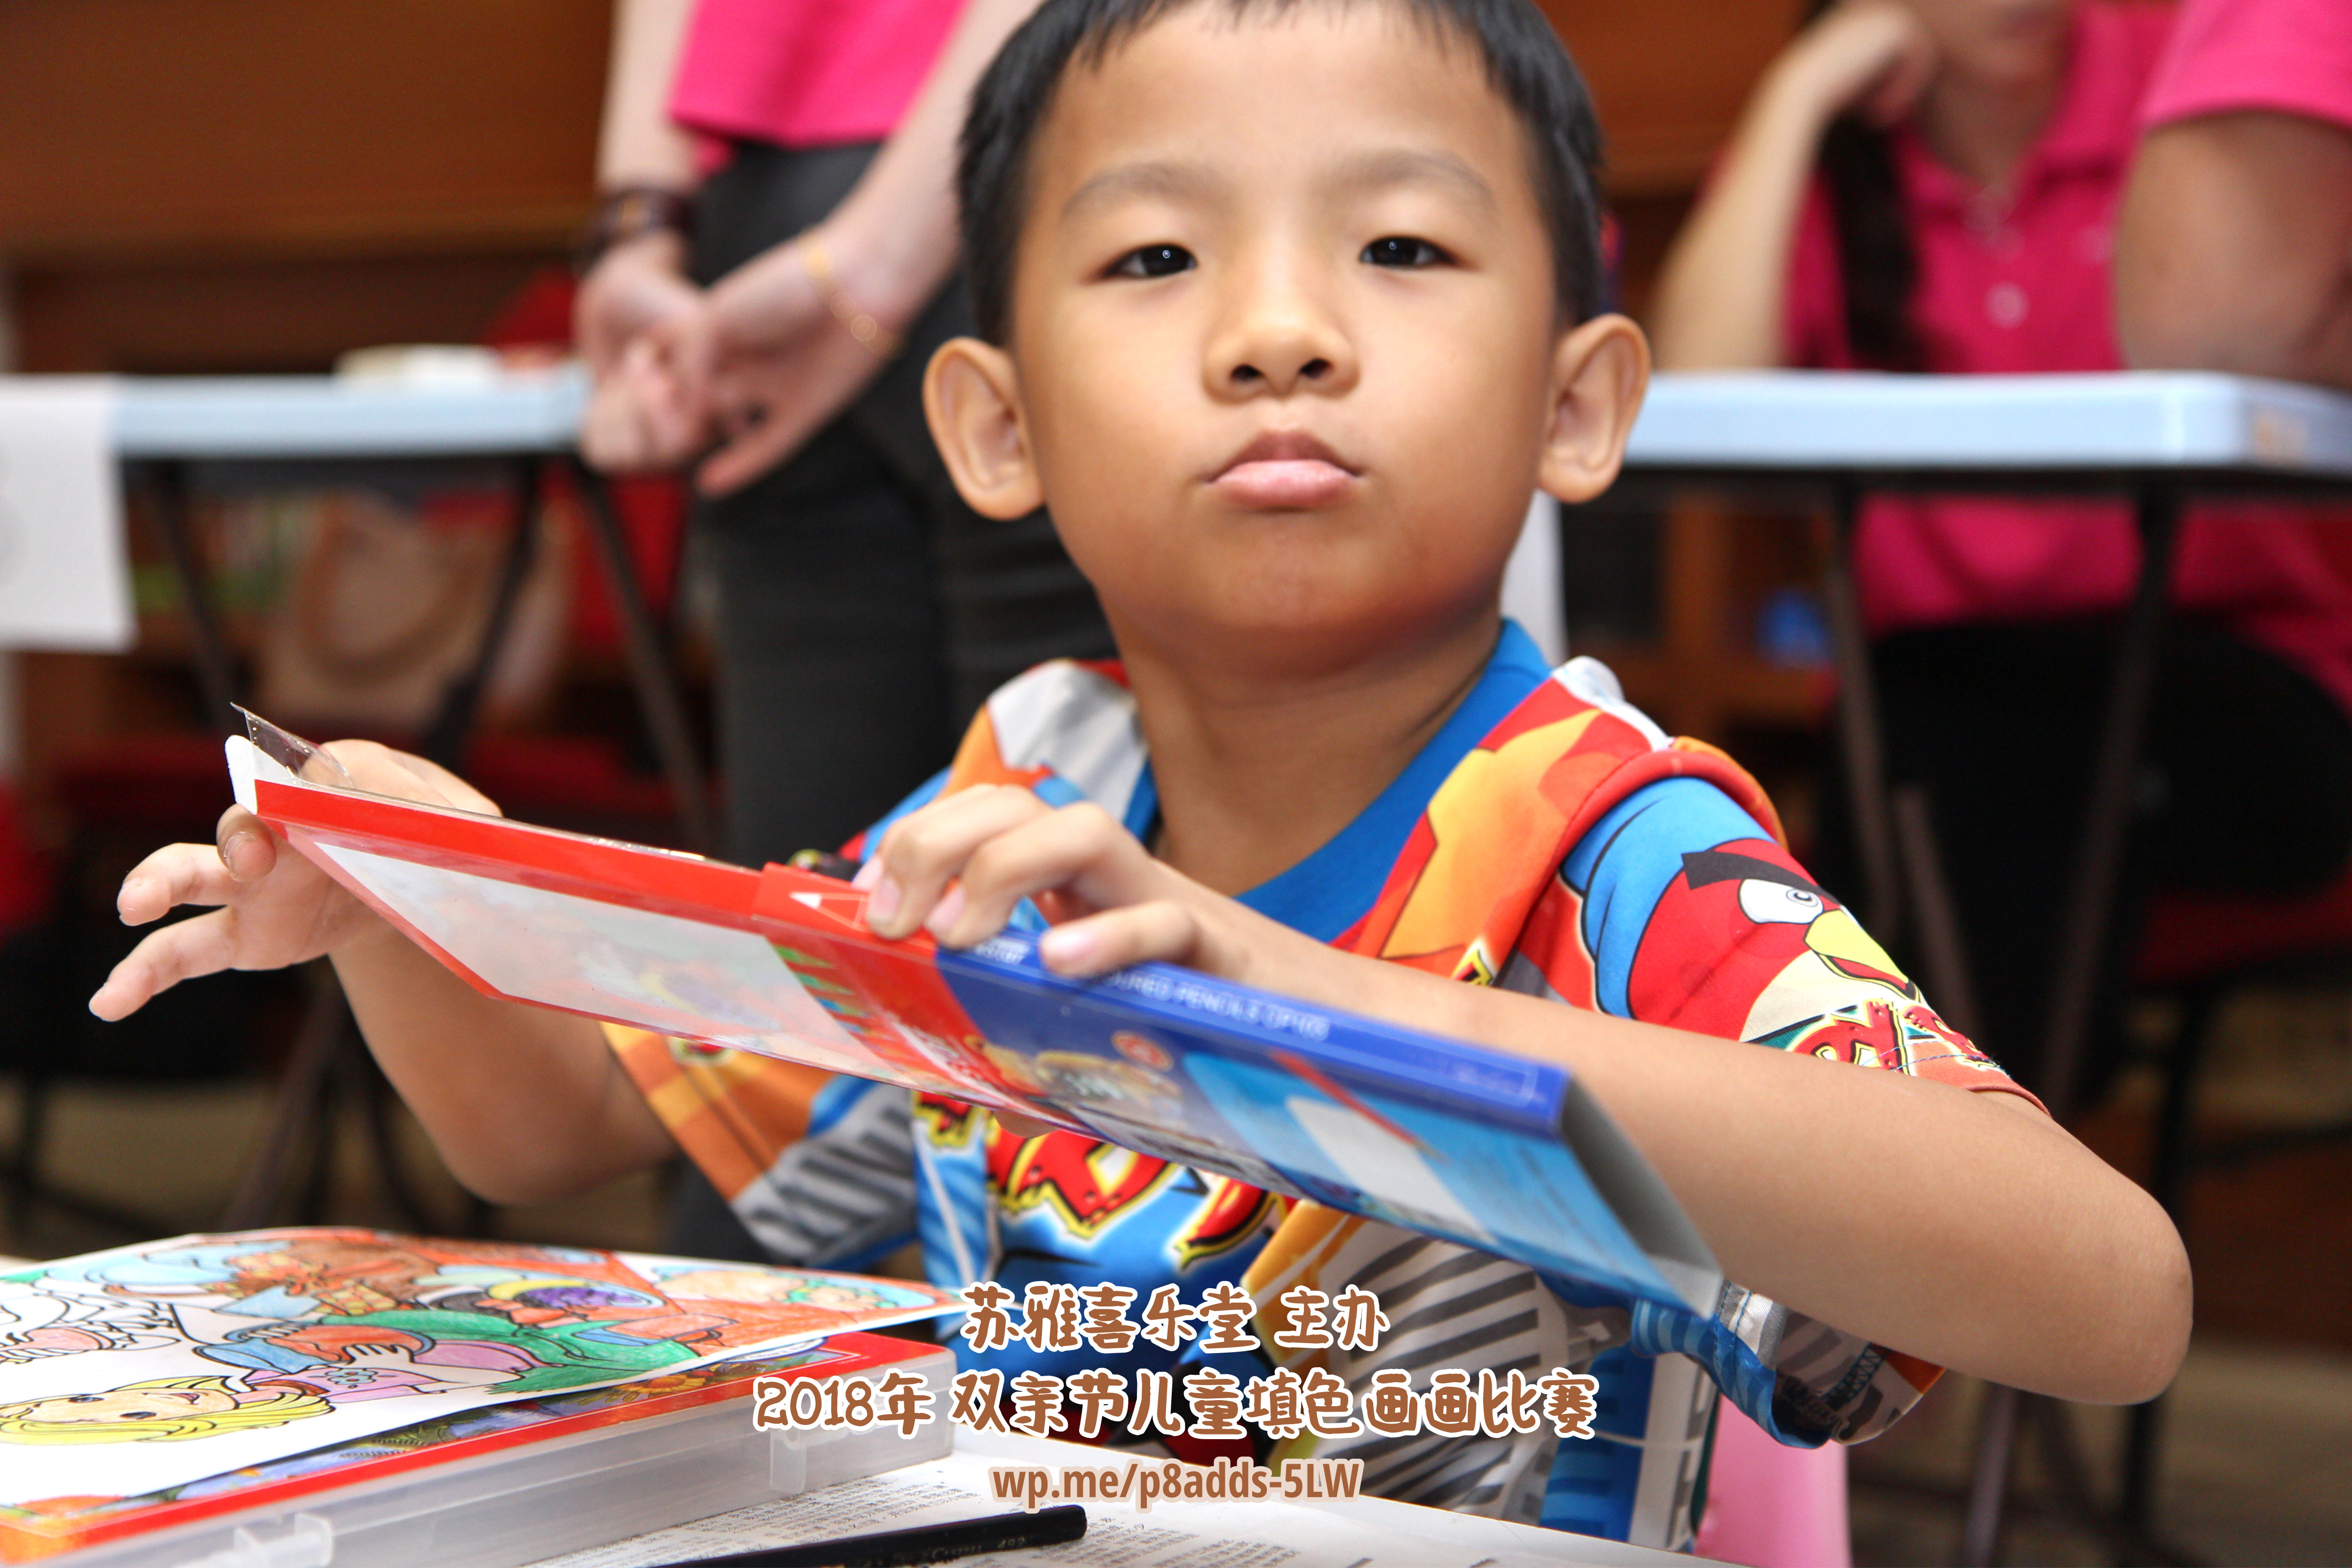 Batu Pahat Gereja Joy Soga Colouring Contest 苏雅喜乐堂主办2018年 峇株巴辖双亲节儿童填色画画比赛 培养儿童对彩色画画的兴趣 发掘美术的潜能 C1-64